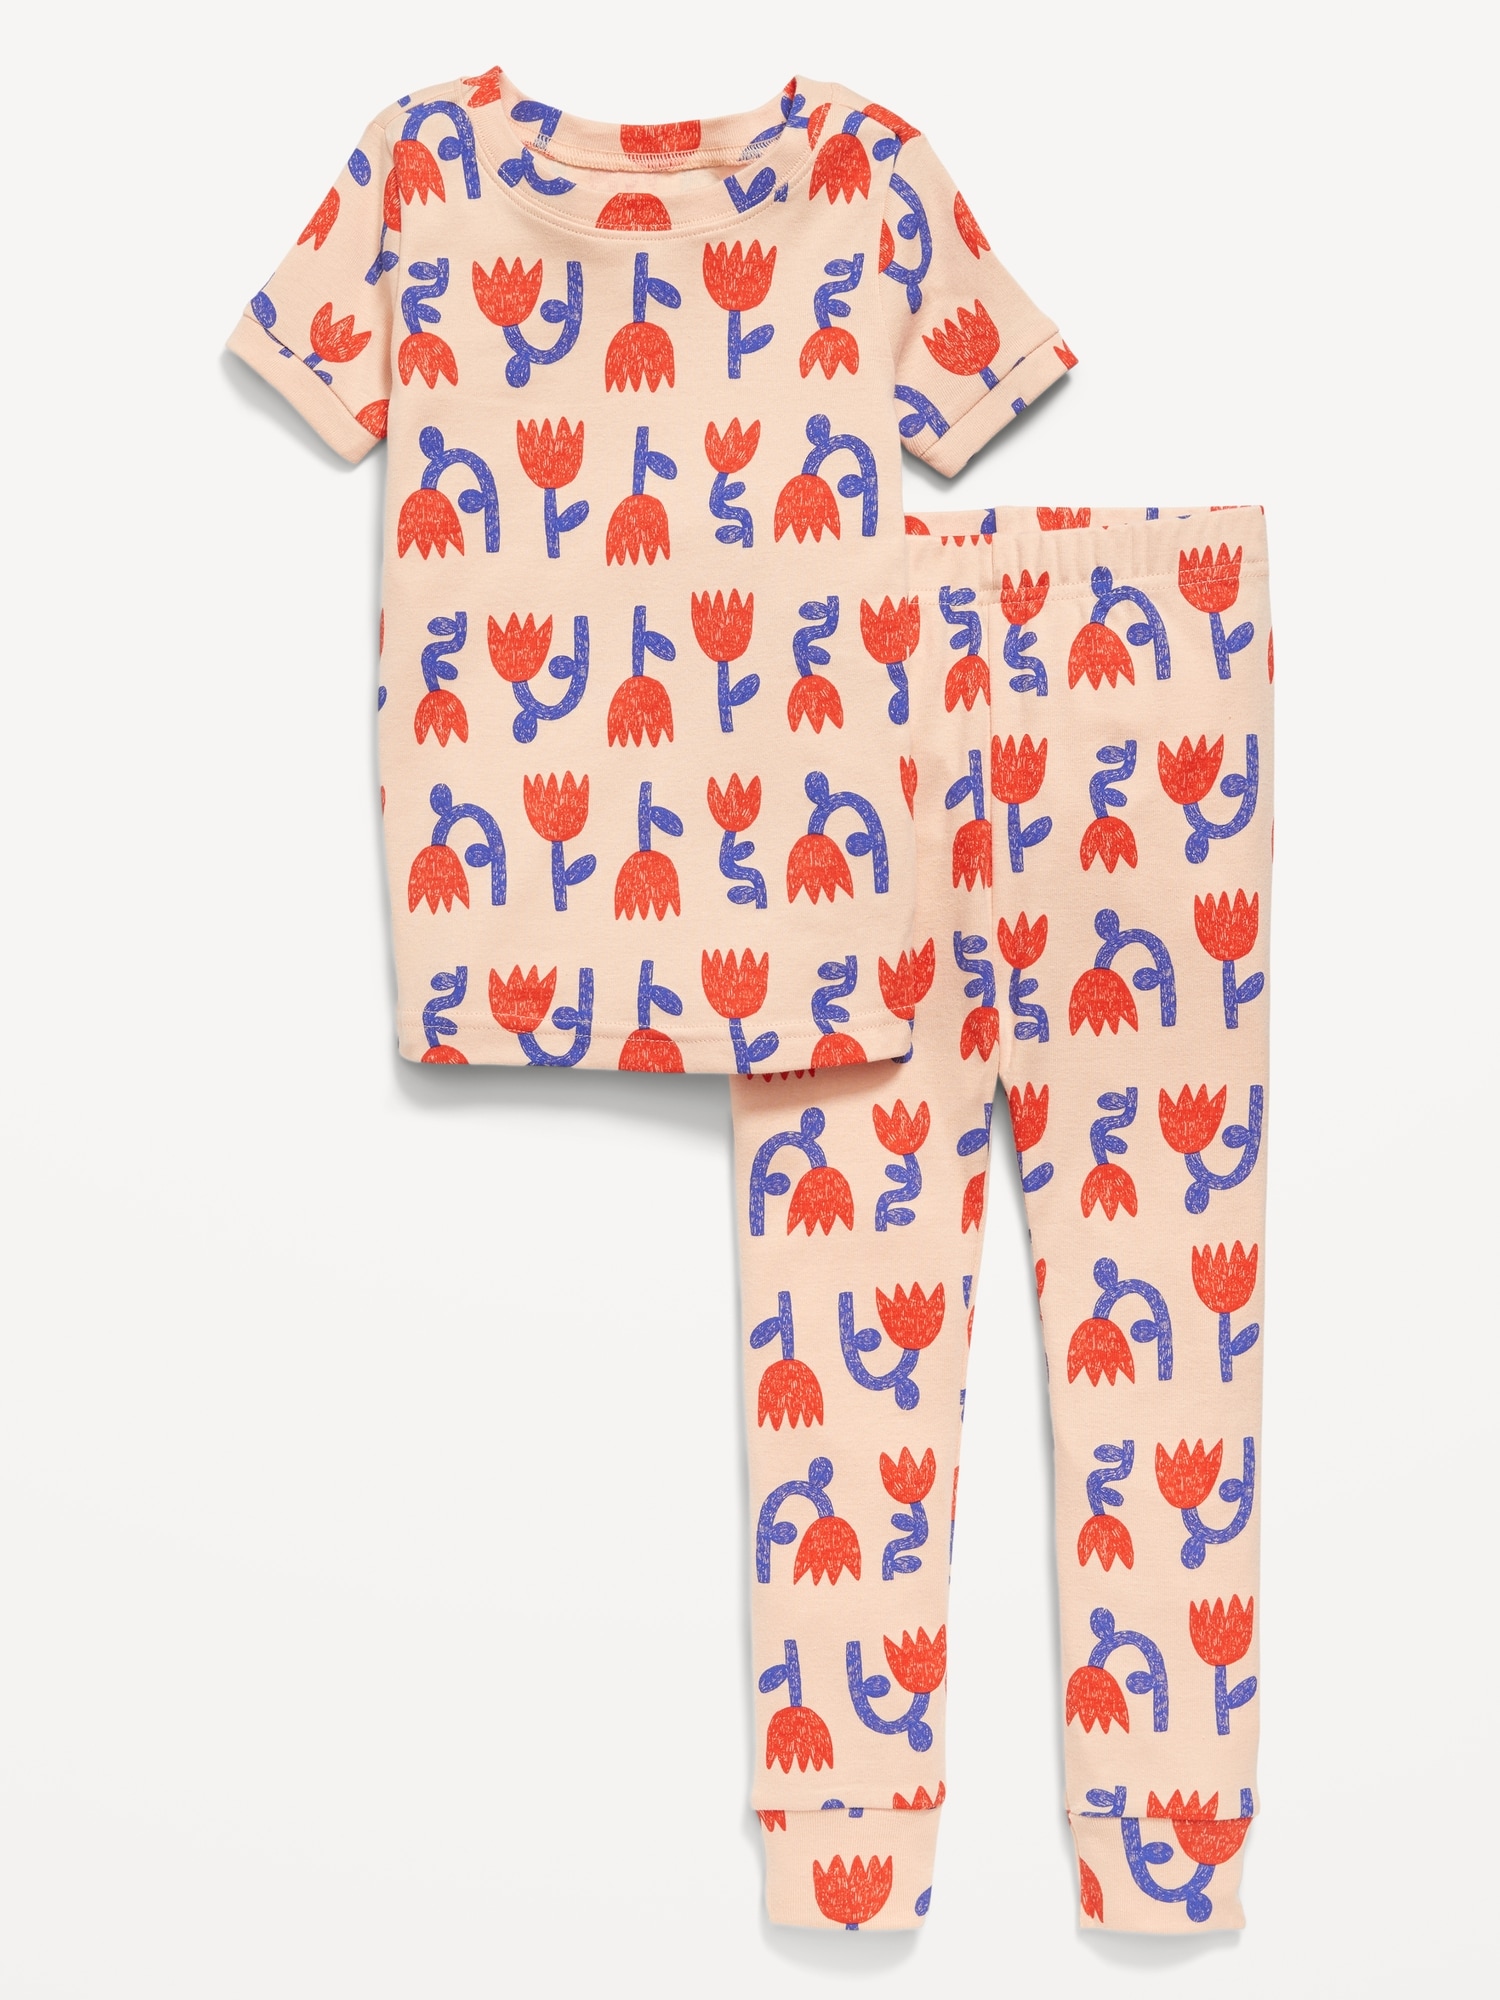  Flamingo Pajamas For Girls Toddler Kids 100% Cotton